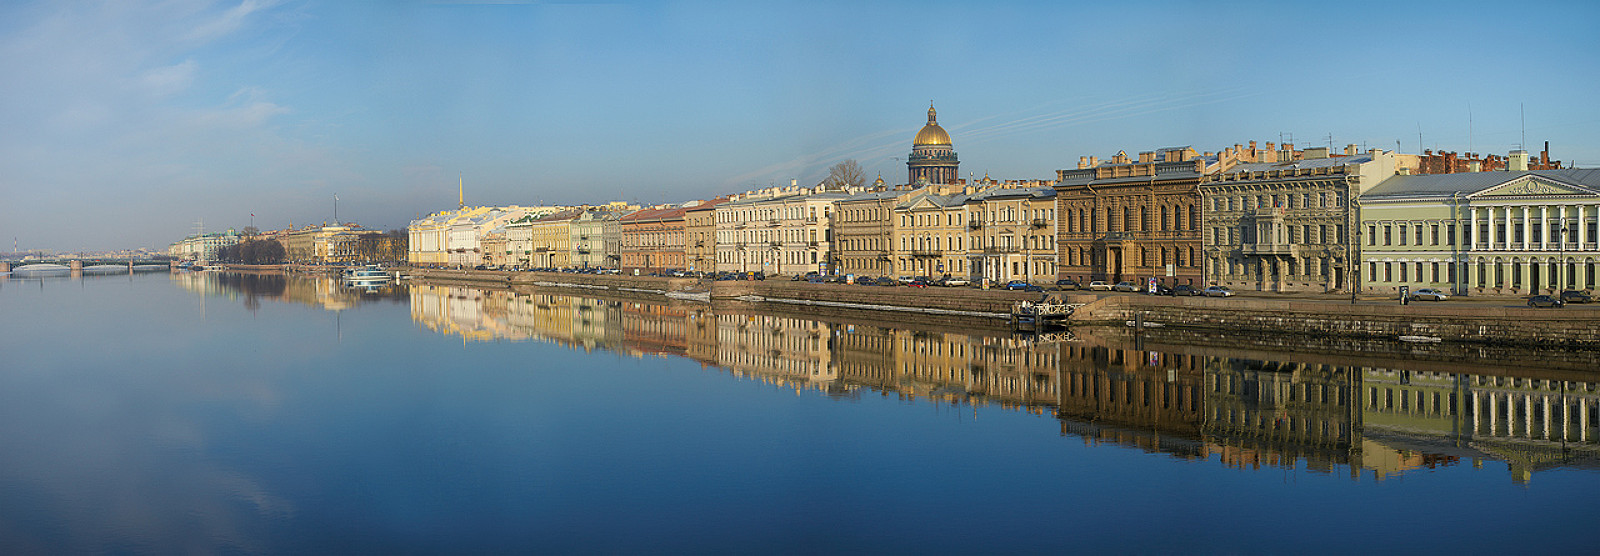 Санкт Петербург набережная Невы панорама